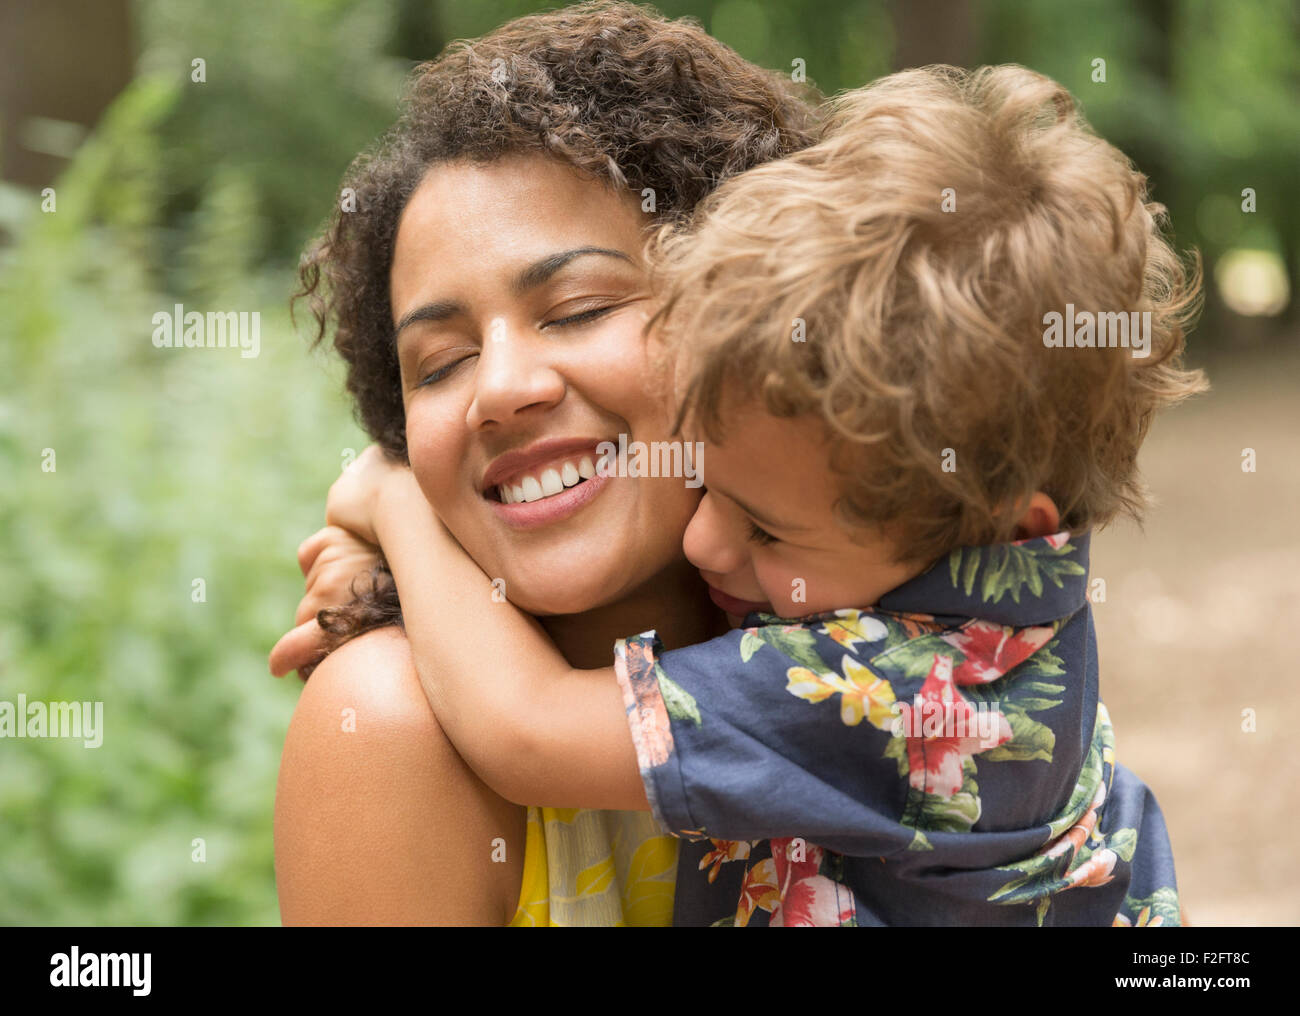 Cerca de la madre y el hijo afectuoso abrazo con los ojos cerrados Foto de stock